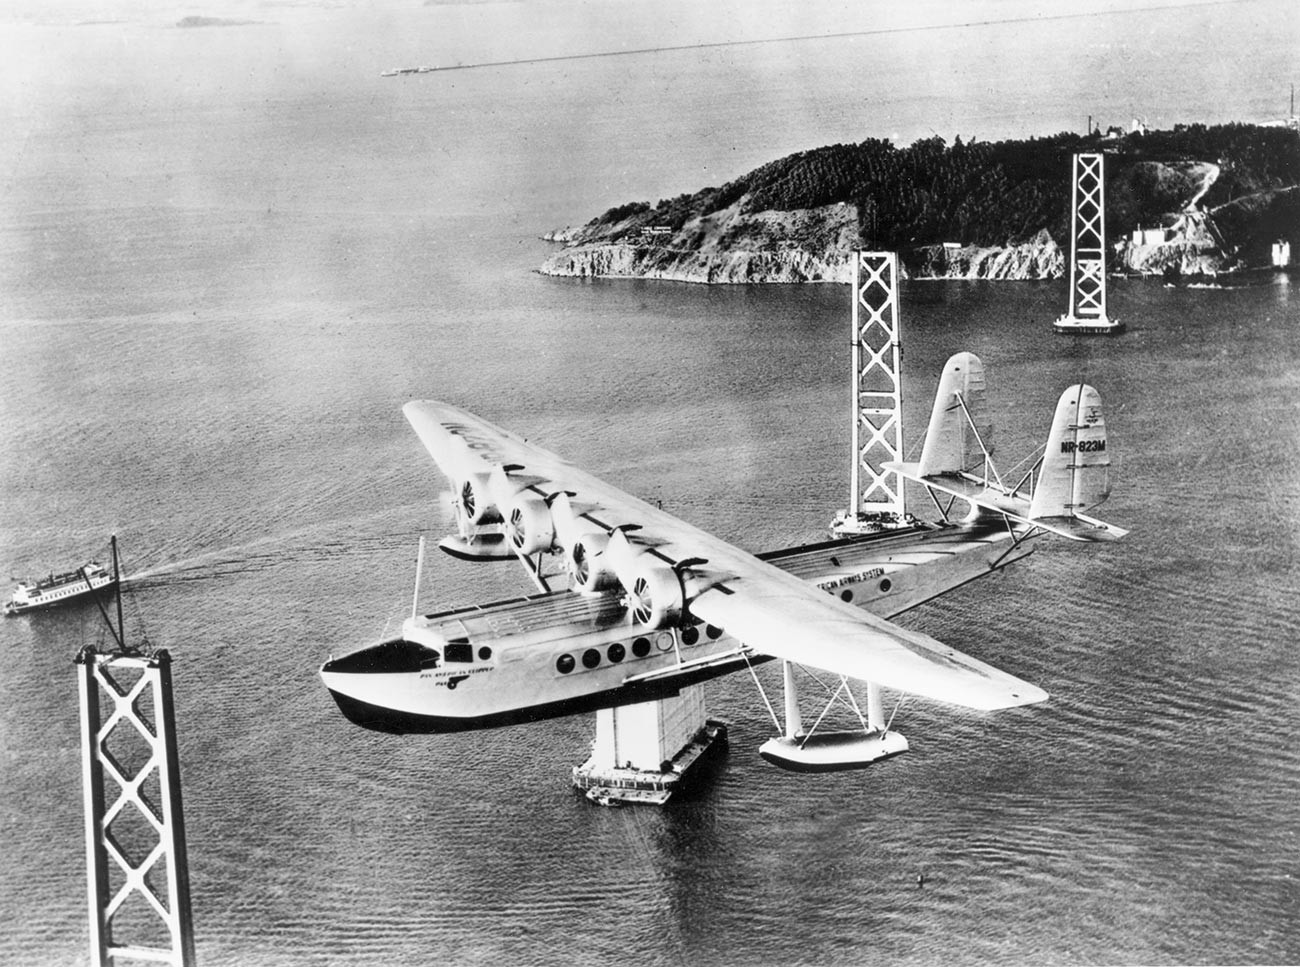 Sikorsky S-42 „Pan American Clipper“ прелеће залив Сан Франциска на путу за Хаваје. Види се конструкција моста Сан Франциско – Окланд у изградњи. Око 1934.